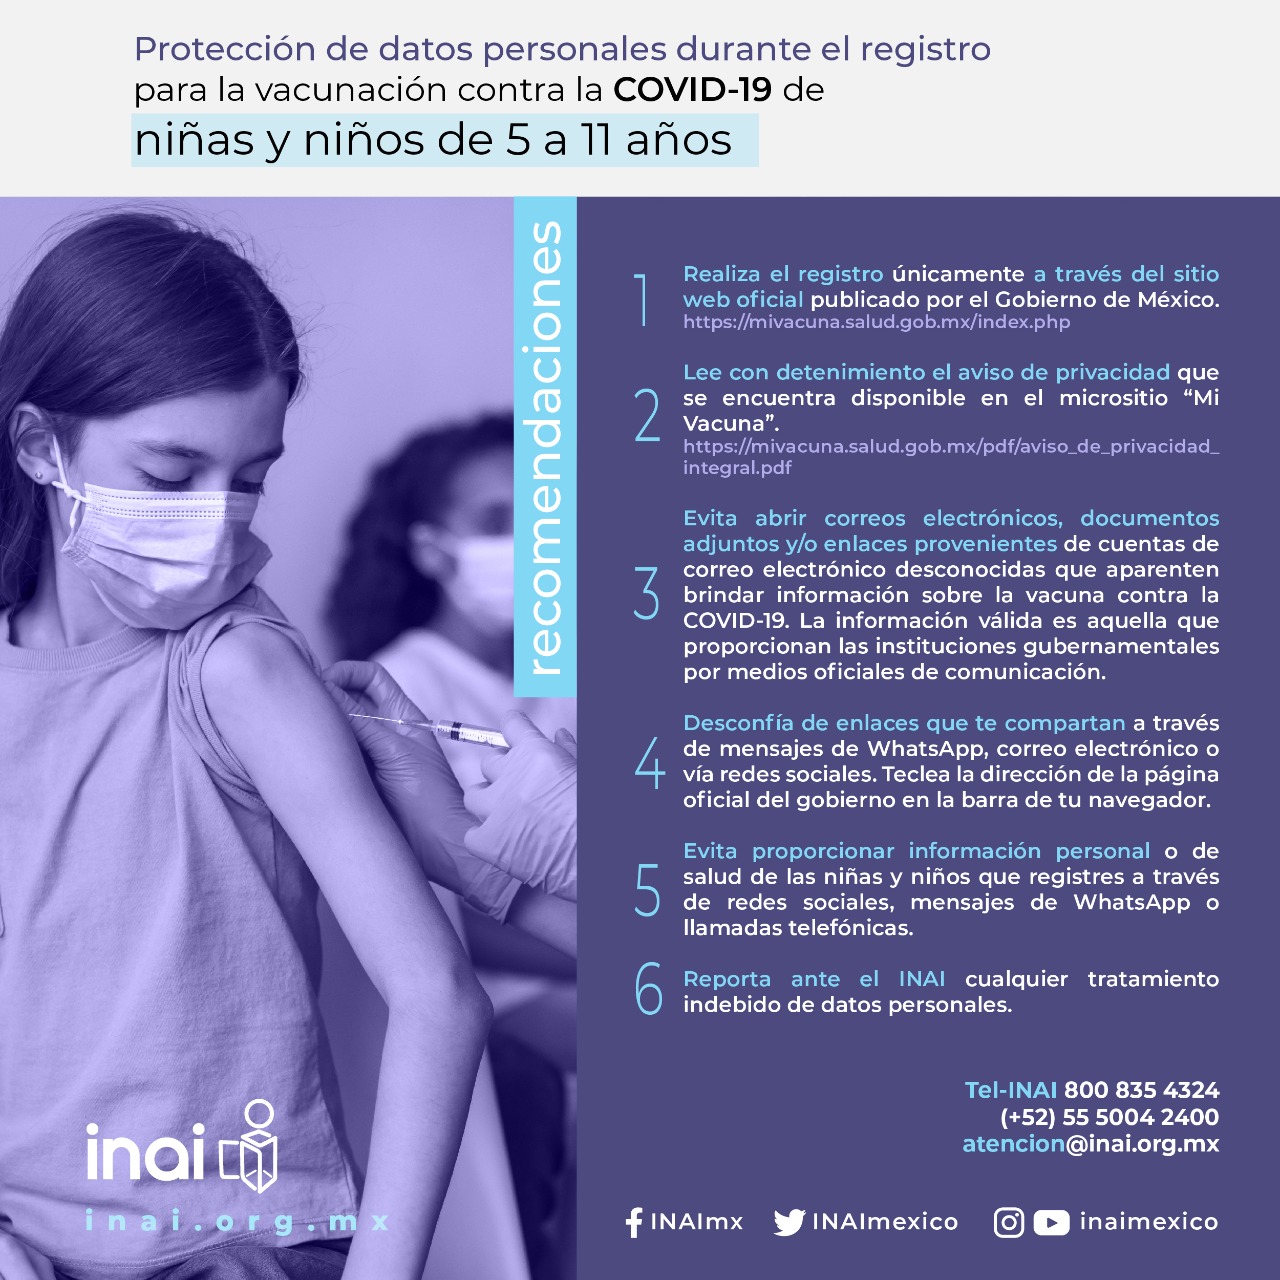 Protección de datos personales durante el registro para la vacunación contra la COVID-19 de niñas y niños de 5 a 11 años